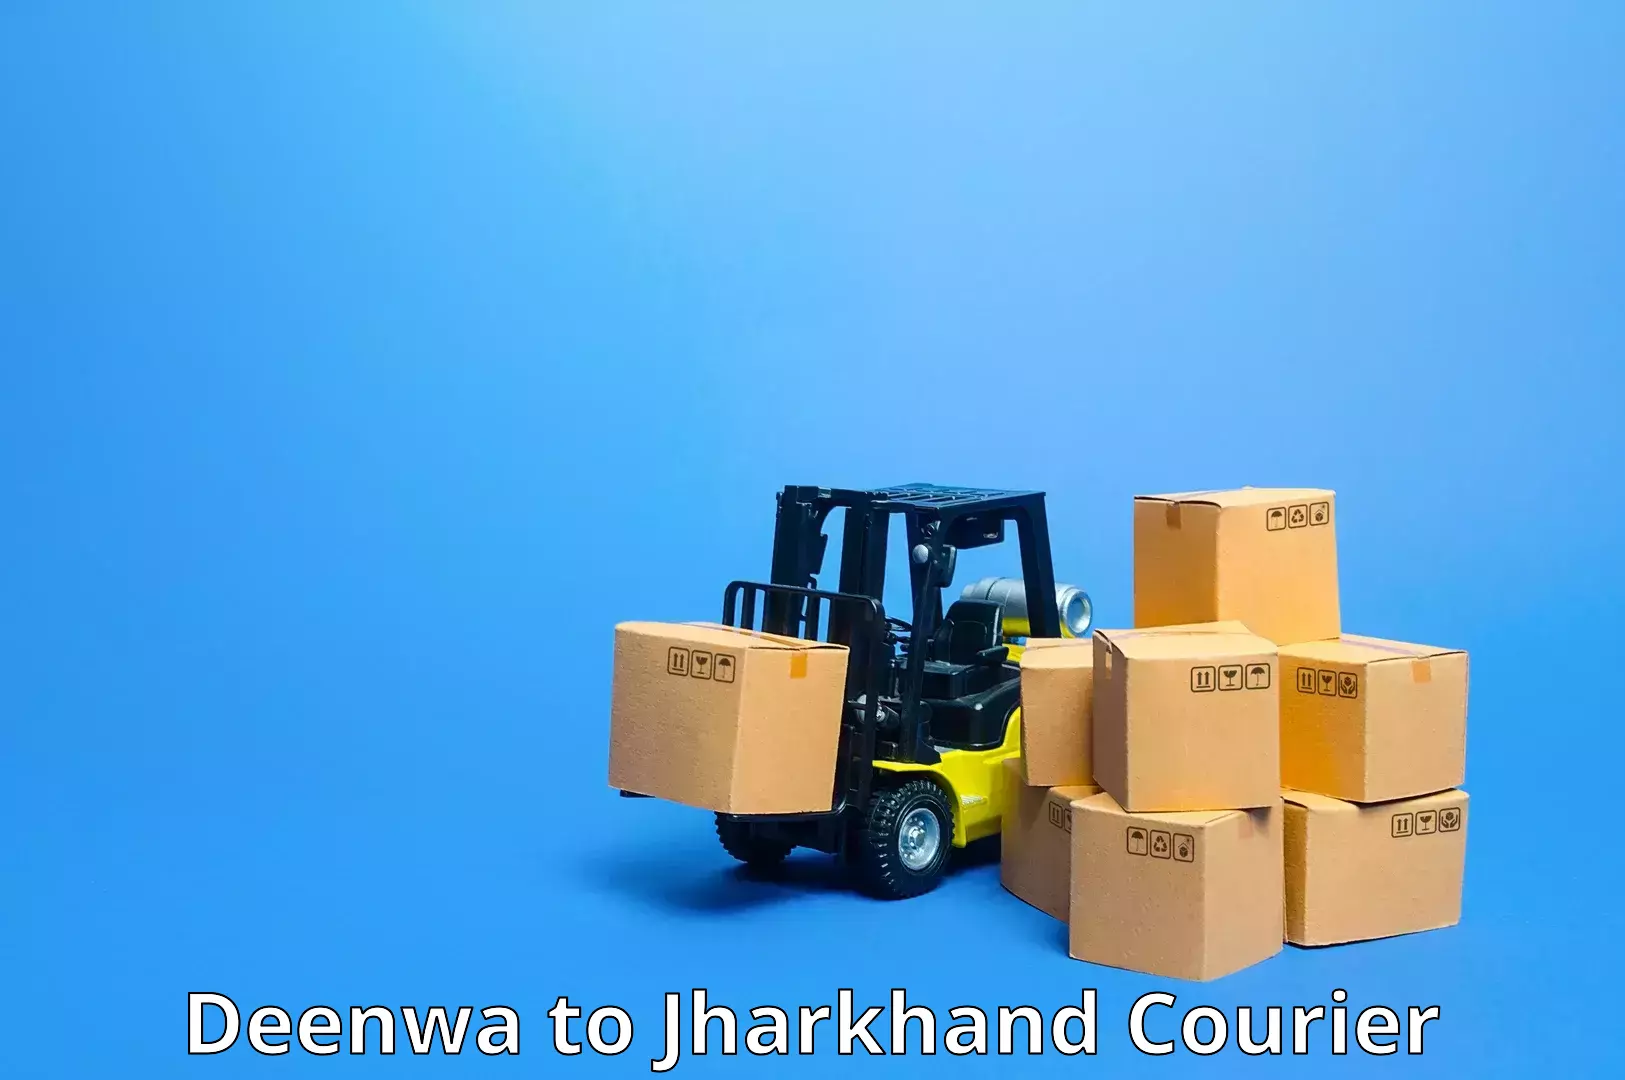 Urgent courier needs Deenwa to Padma Hazaribagh